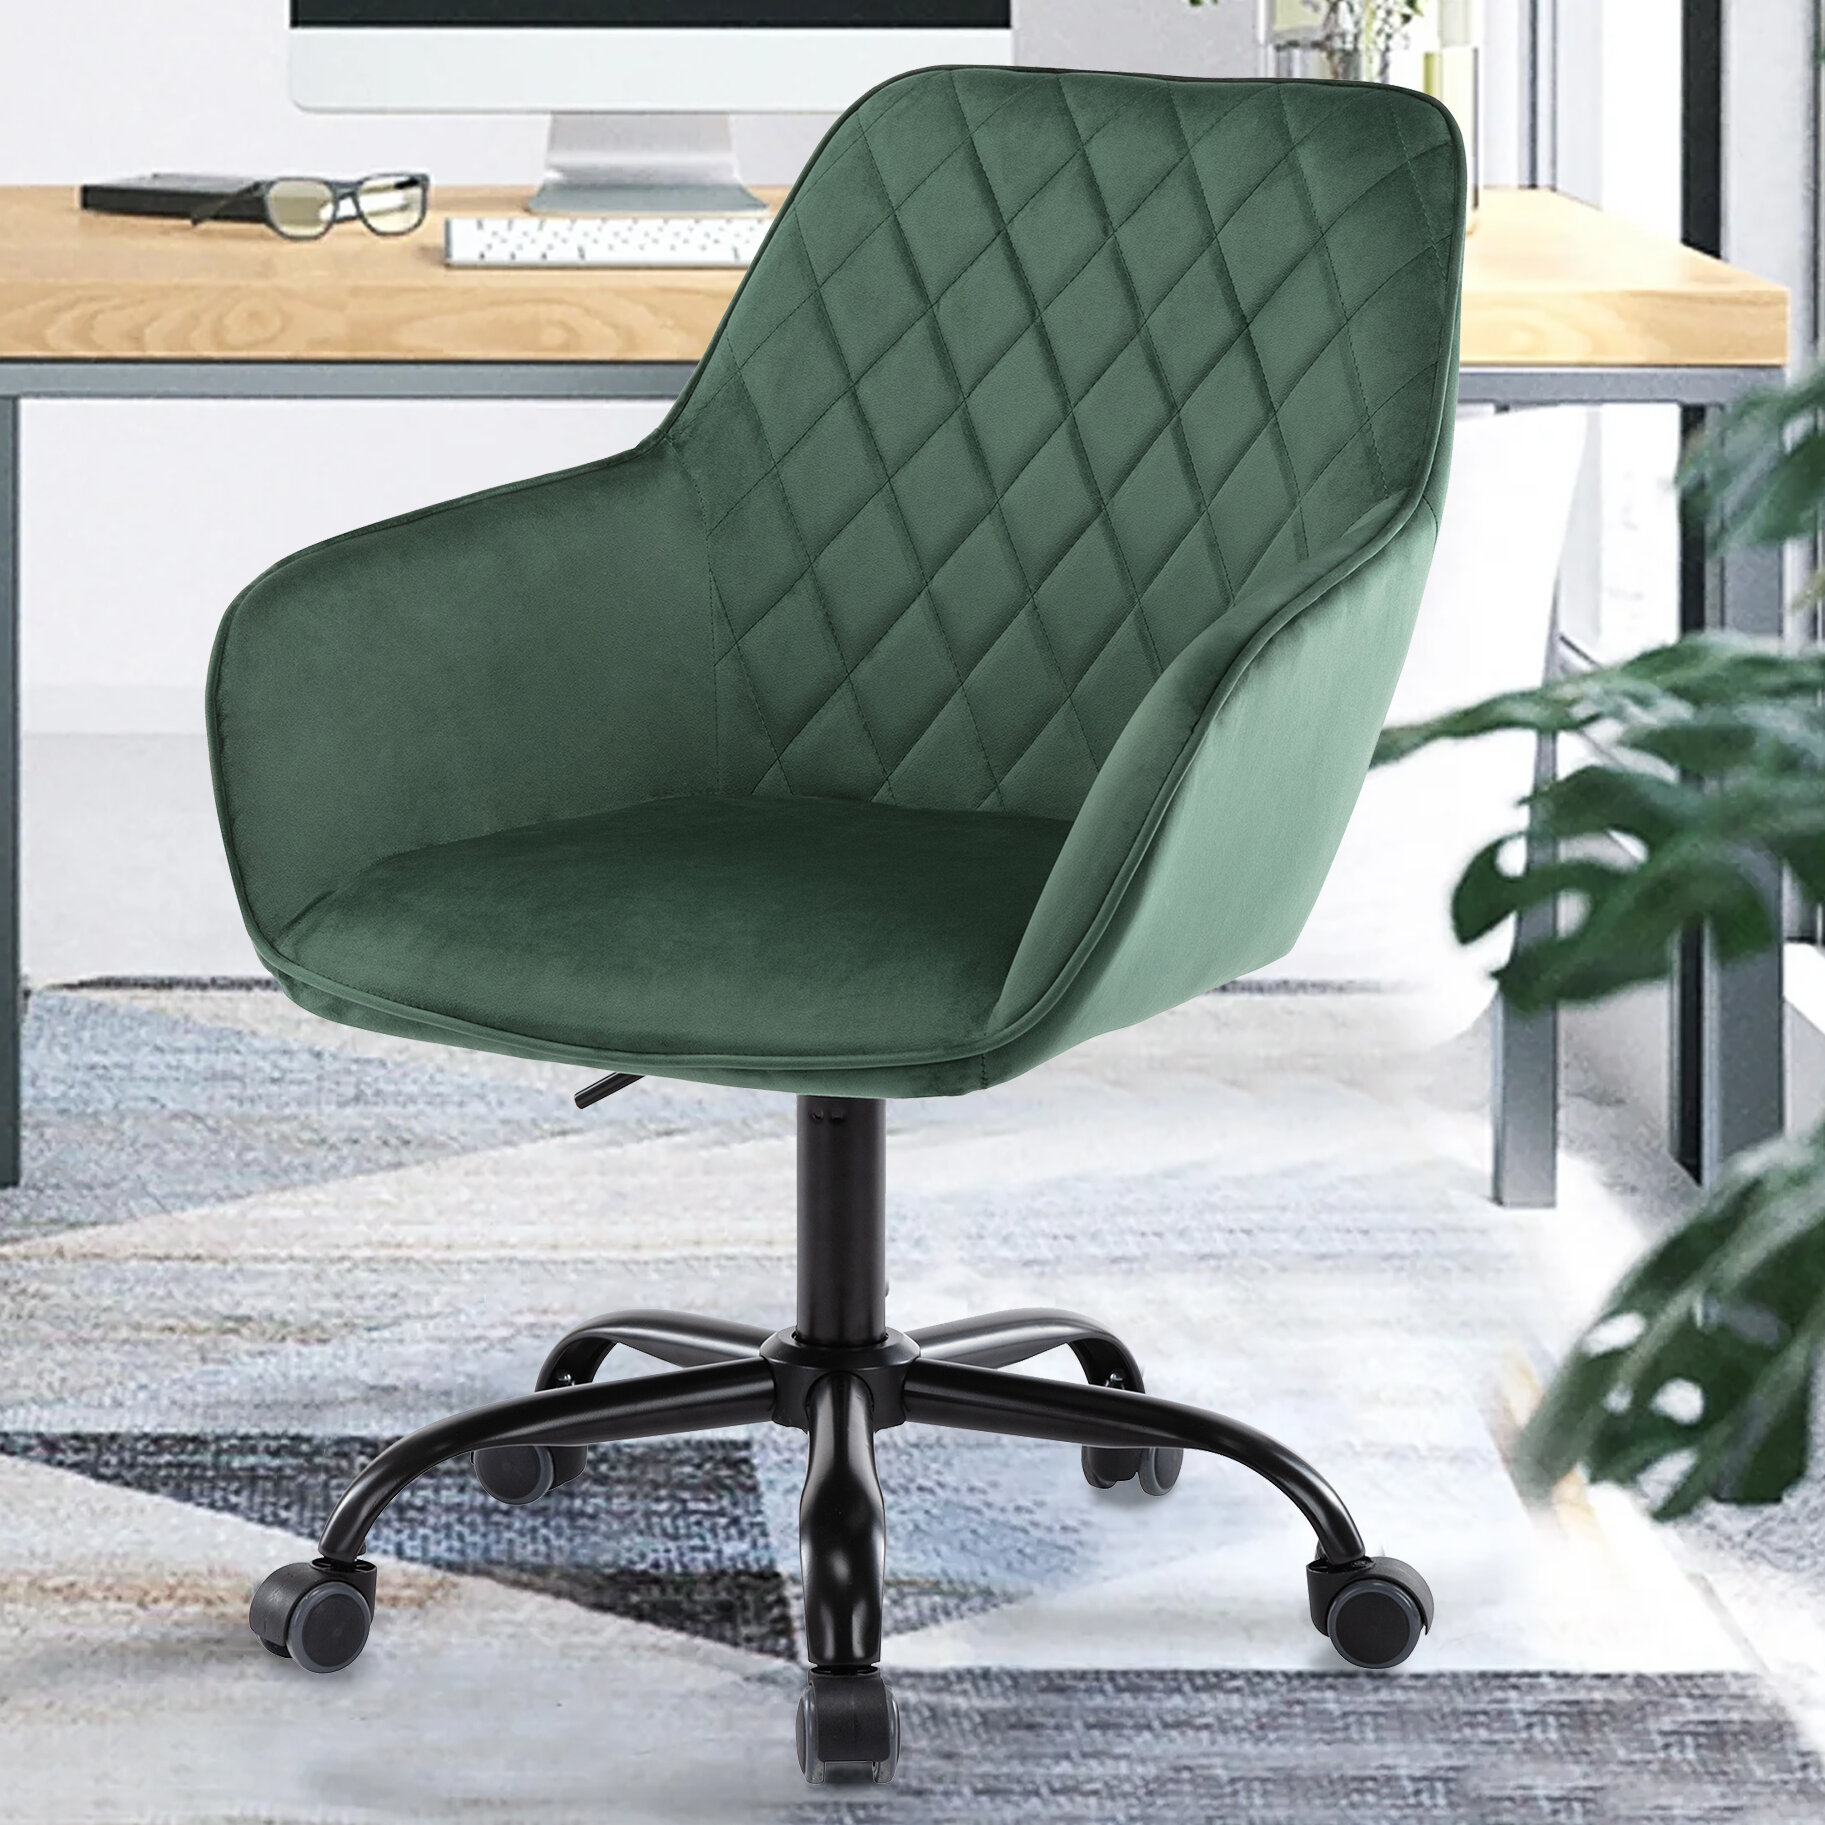 Green Velvet Desk Chair - Green Velvet Office Chair With Swivel Base